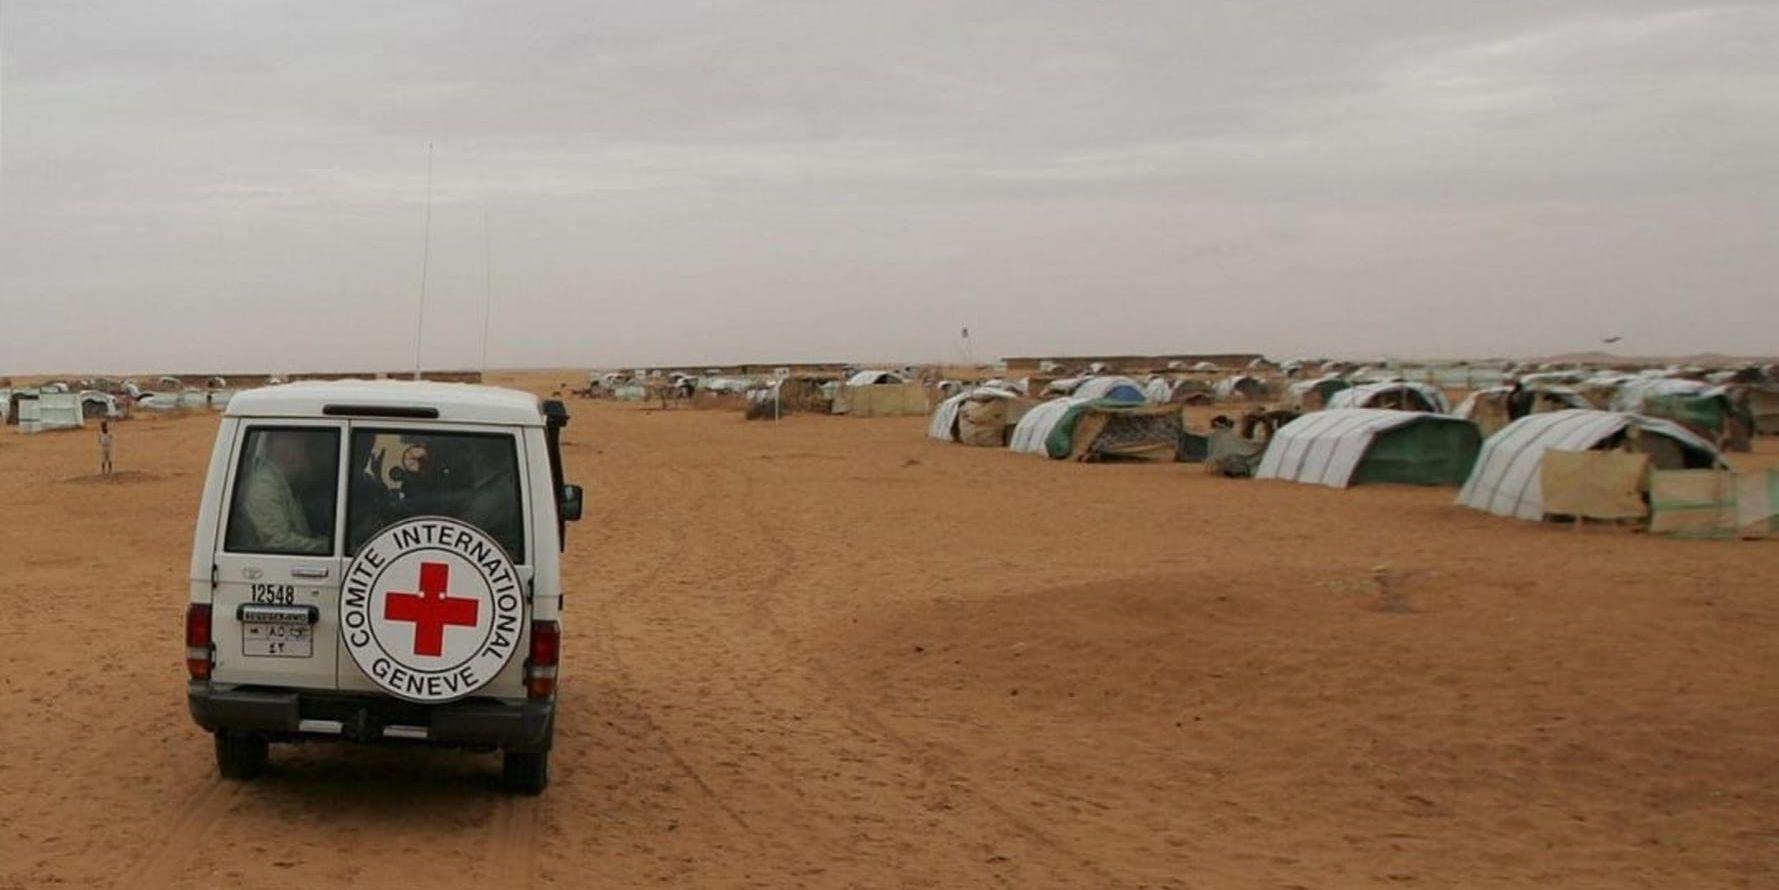 Ett av Internationella Rödakorskommitténs fordon. Bilden är tagen vid ett annat tillfälle, i grannlandet Sudan. Arkivbild.